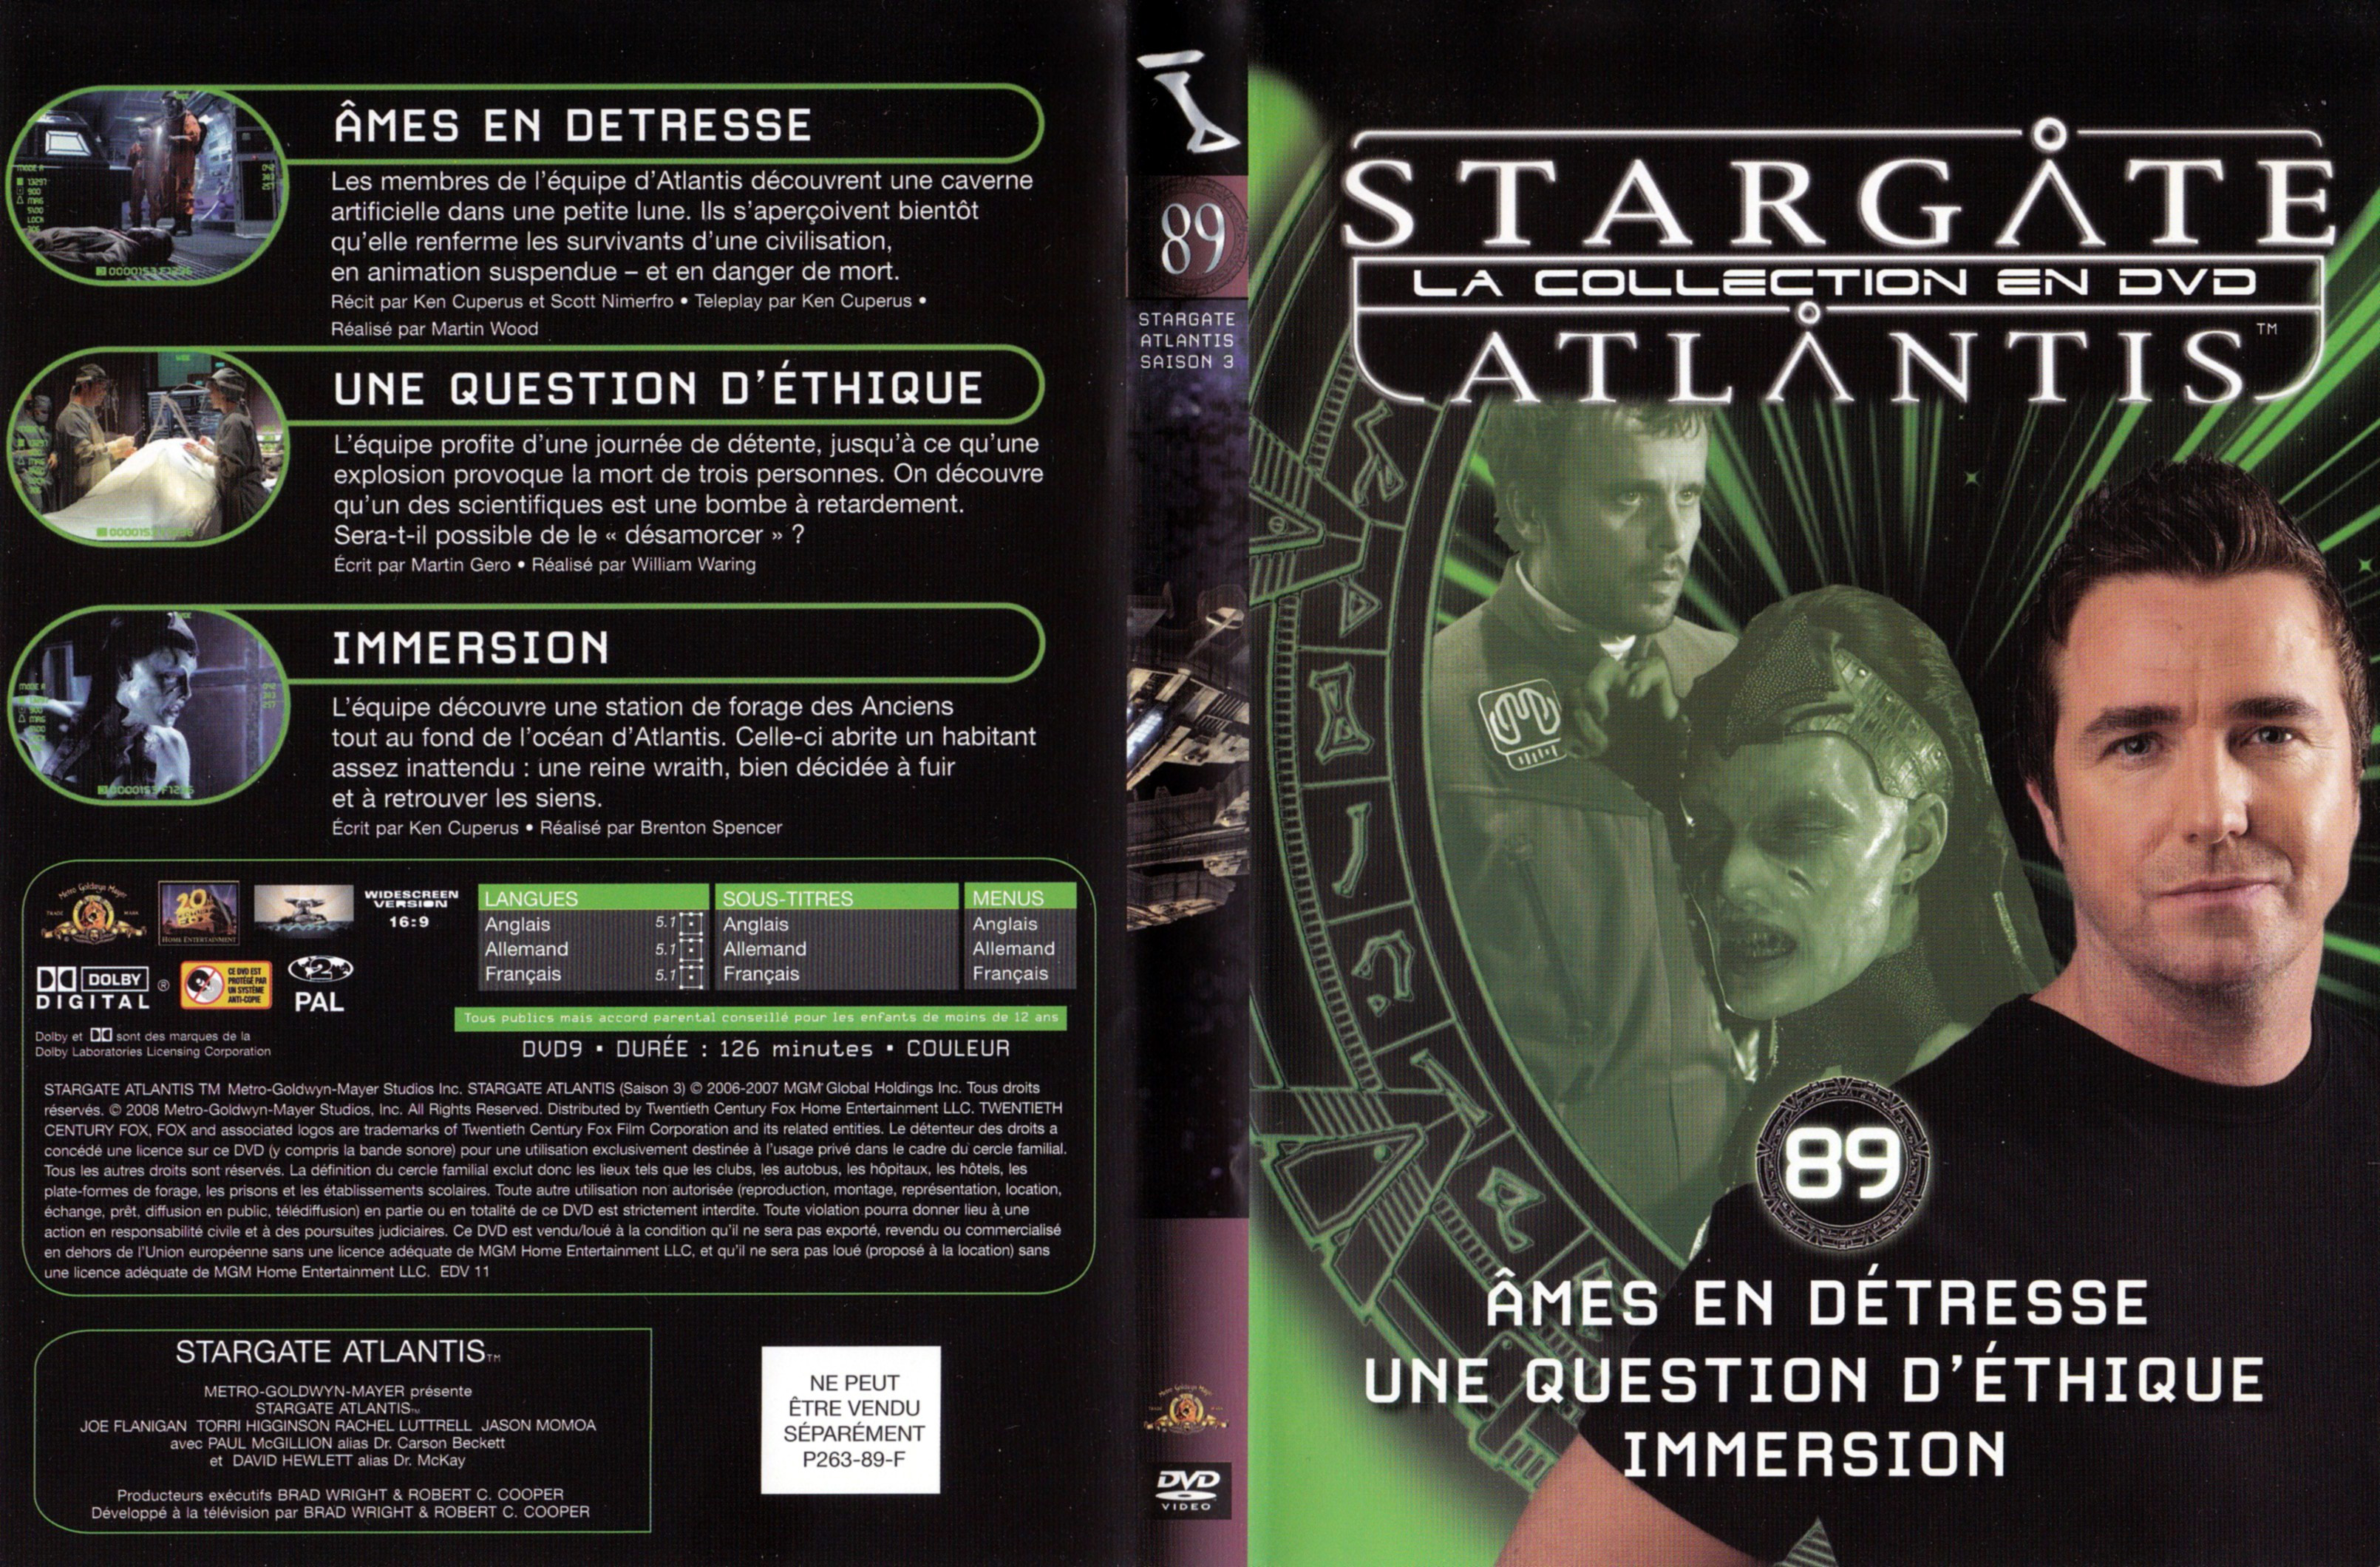 Jaquette DVD Stargate SG1 Atlantis Saison 3 vol 89